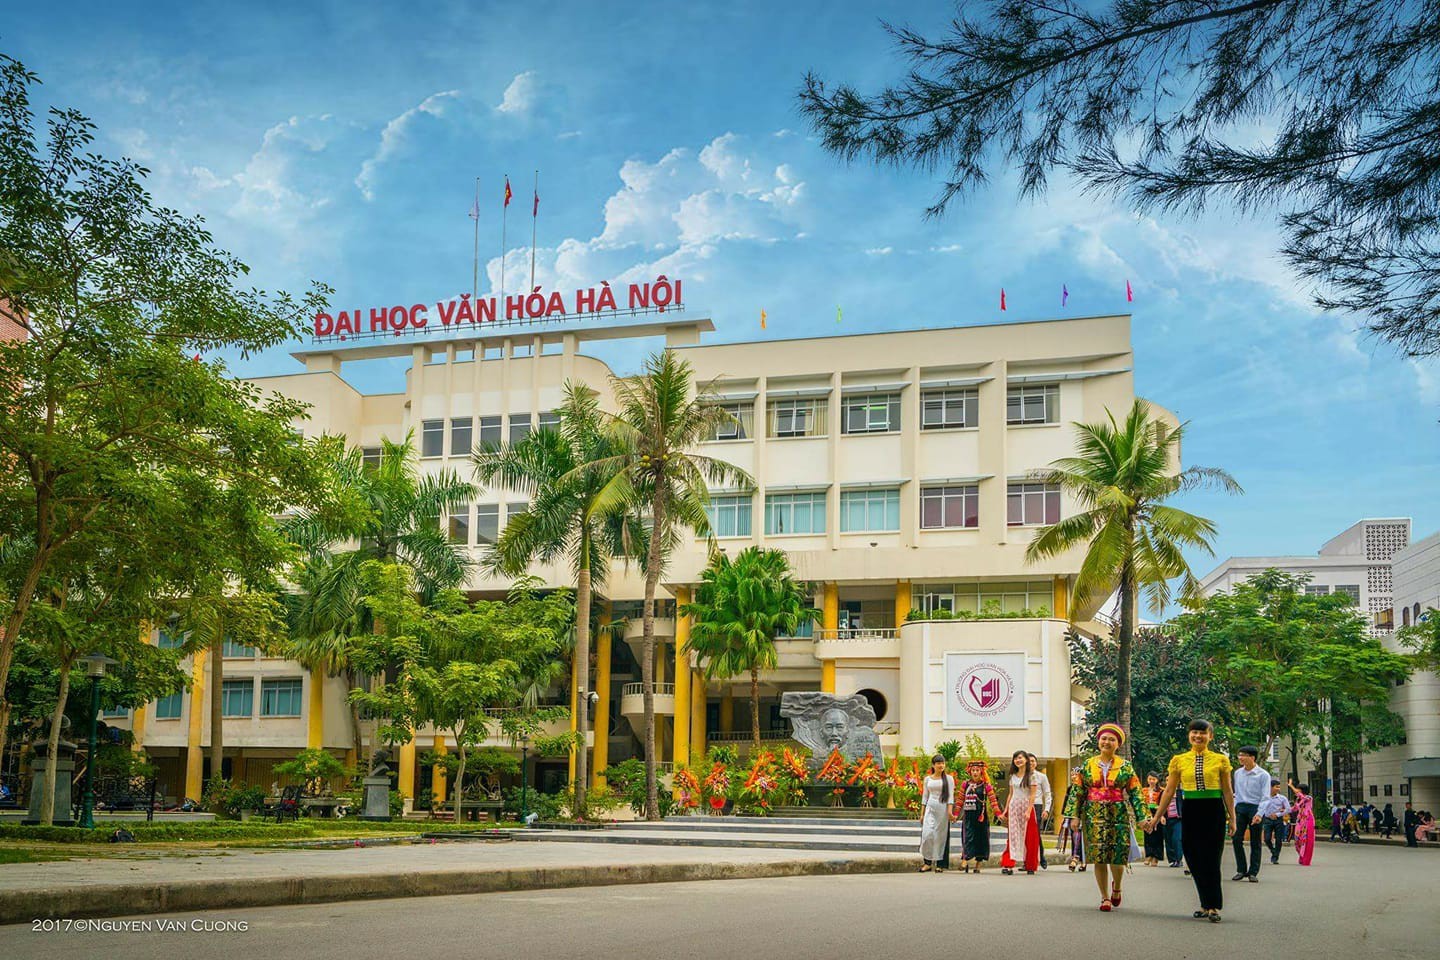 TCông ty Cổ phần Đào tạo Huấn luyện Nghiệp vụ Hàng không Việt Nam thăm và làm việc với Trường Đại học Văn hóa Hà Nội